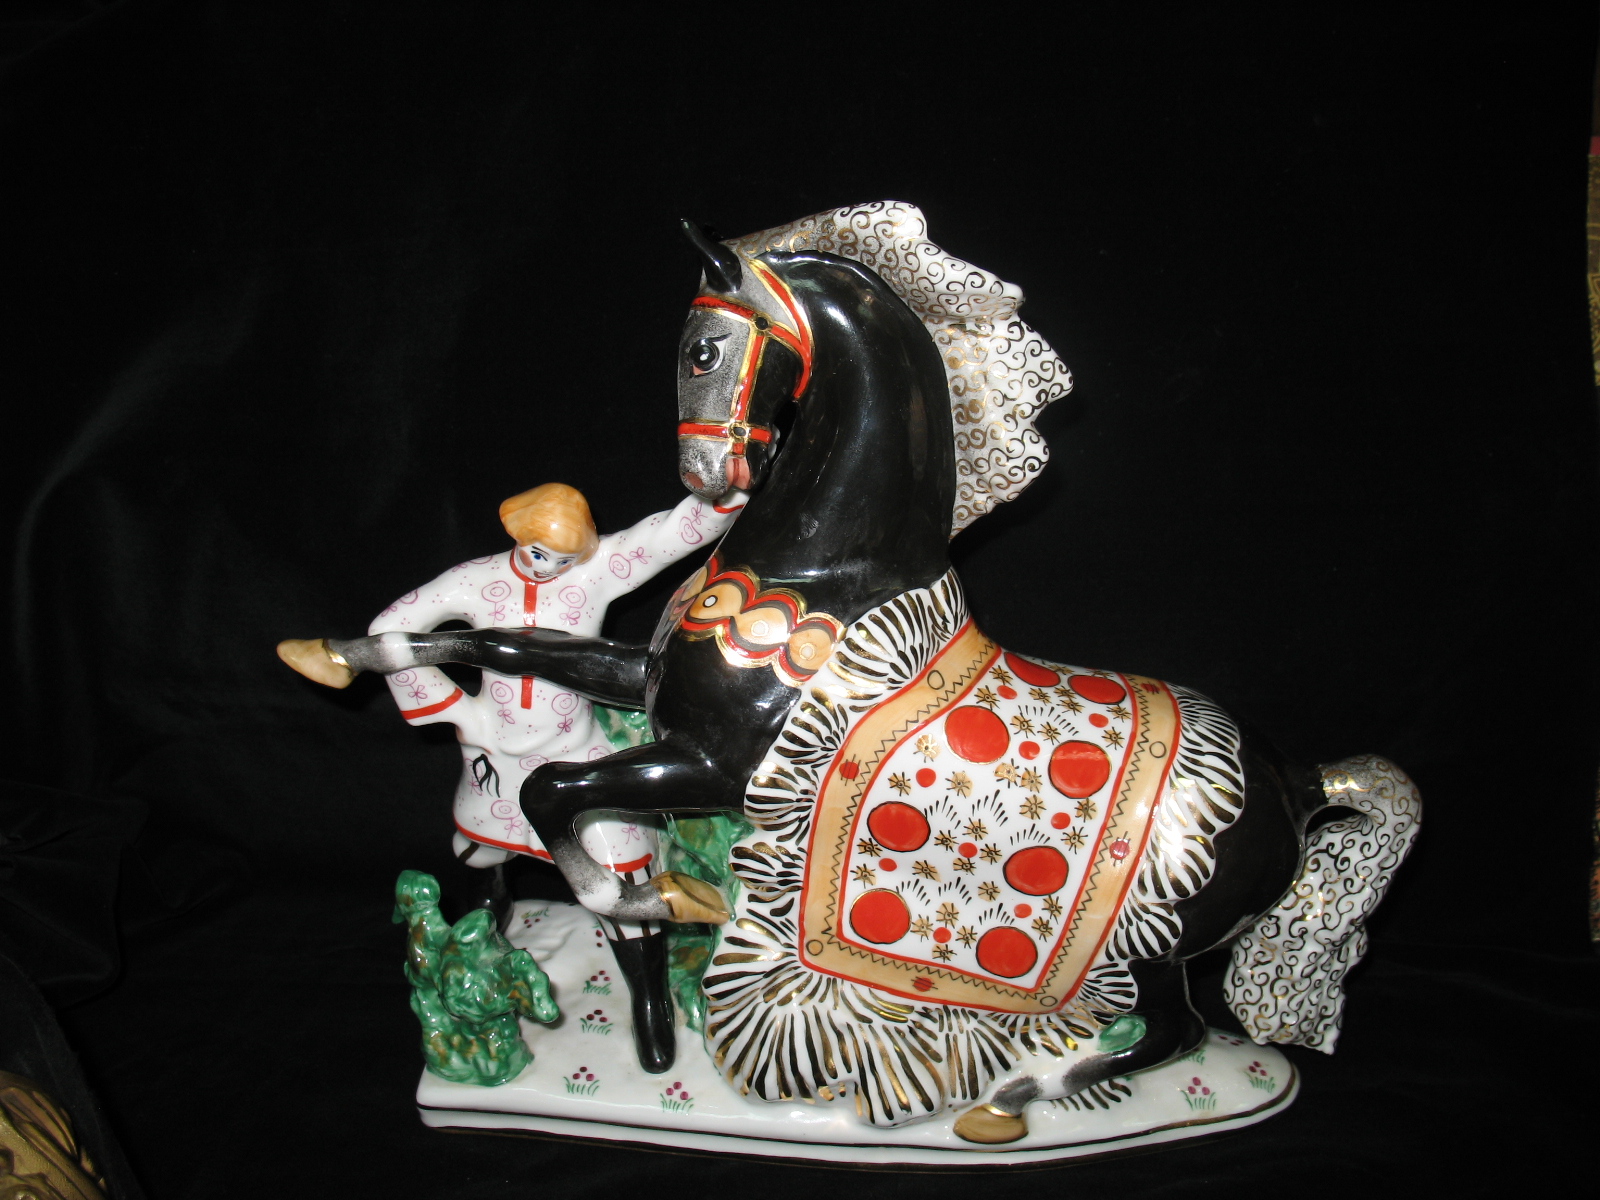 Скульптура брат Иванушка с лошадью по сказке конек горбунок